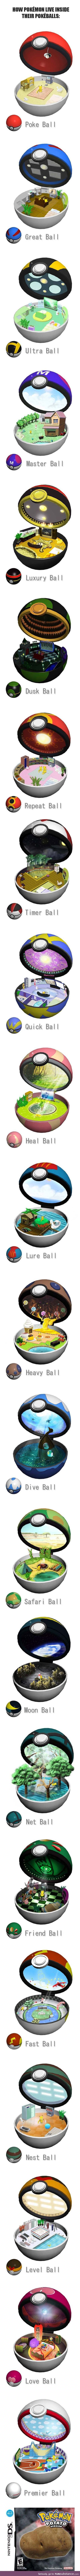 How Pokemon live inside their pokeballs